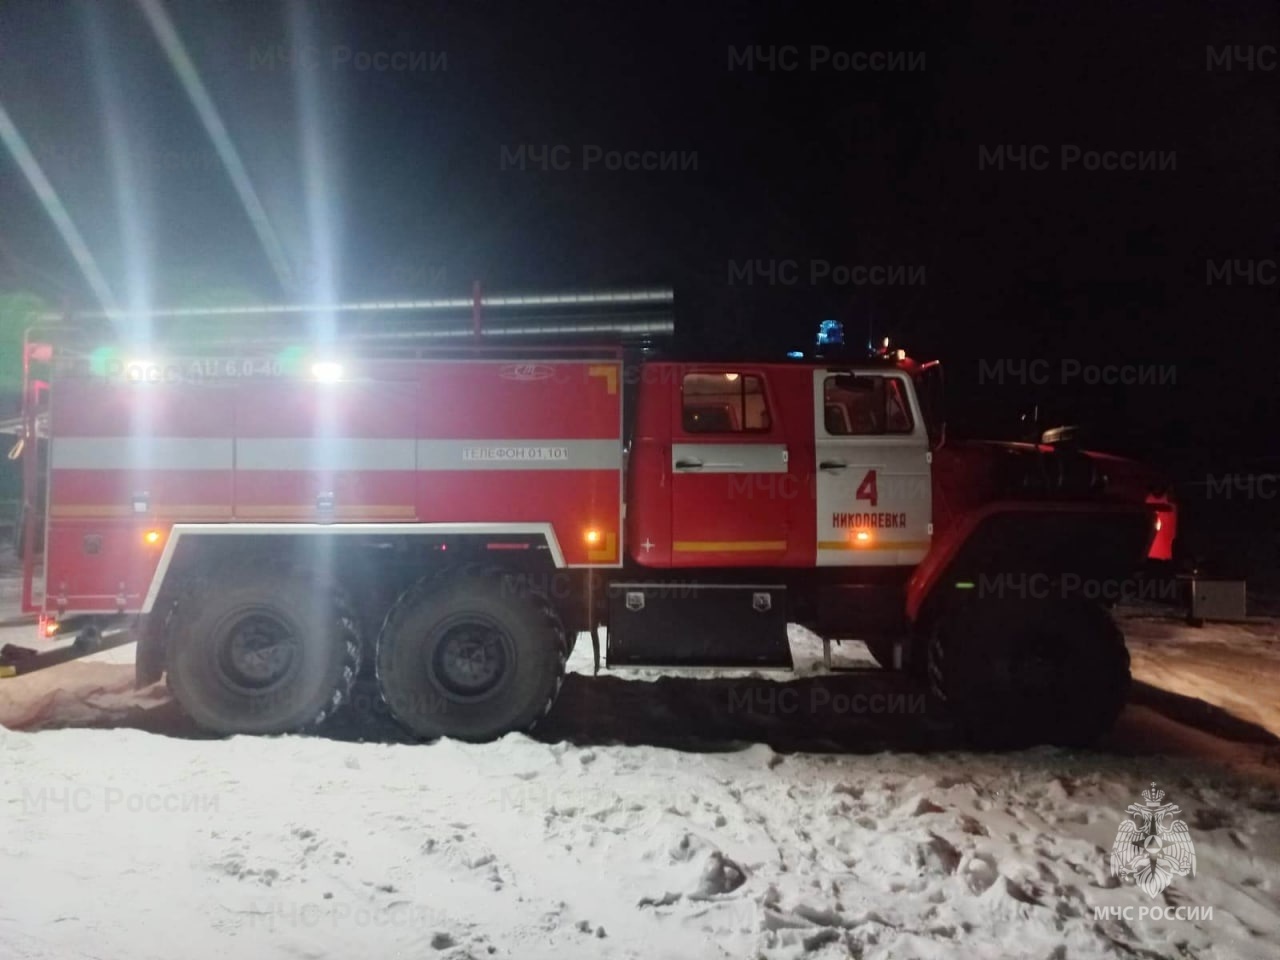 Труп мужчины обнаружен на месте пожара в двухквартирном доме в п. Николаевка ЕАО